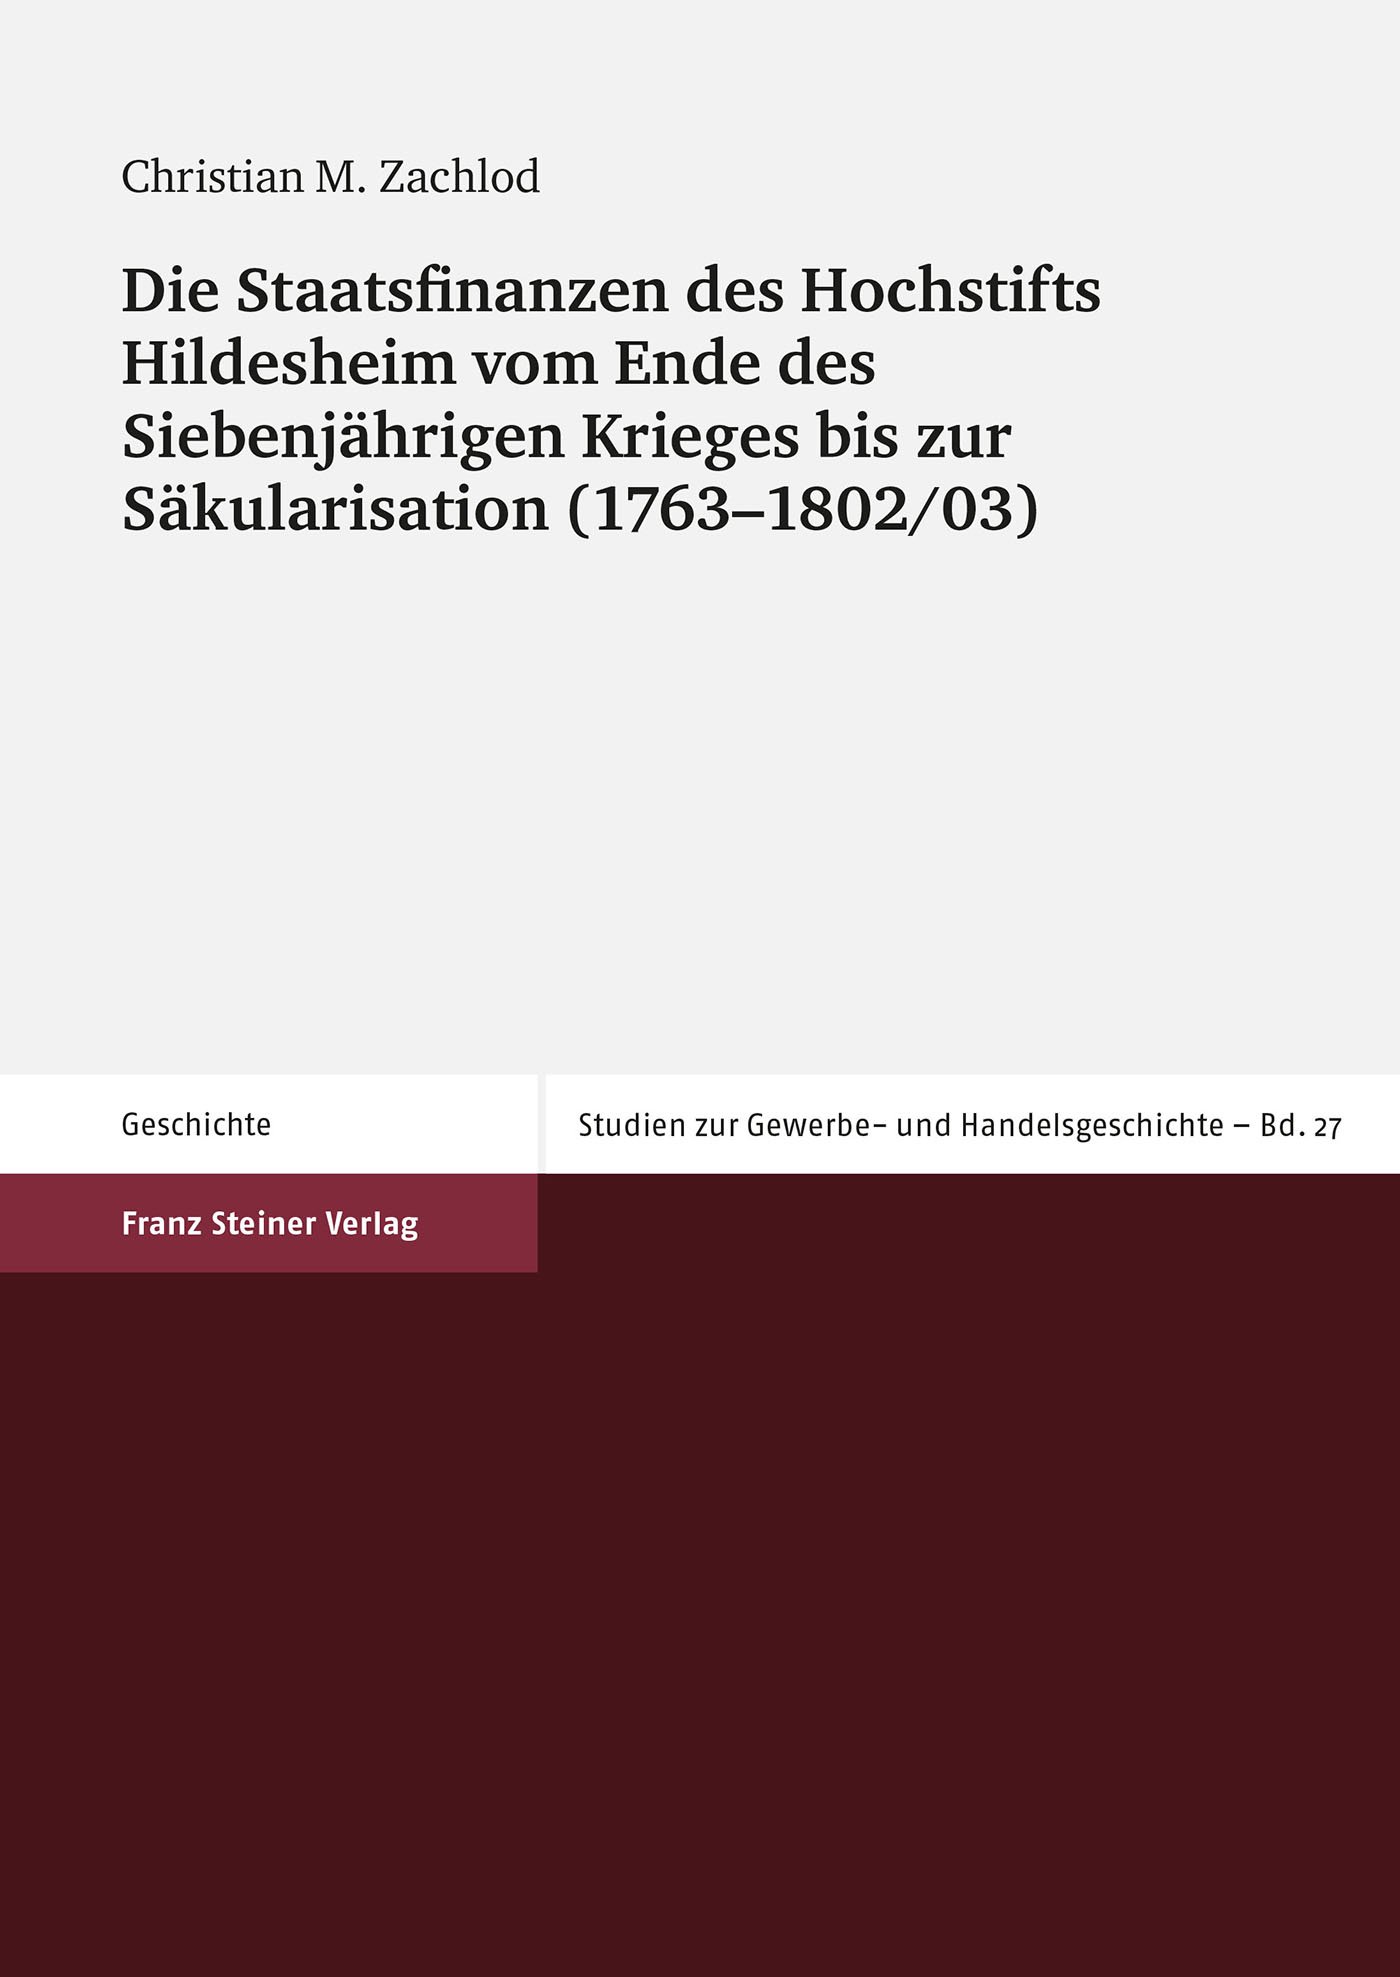 Die Staatsfinanzen des Hochstifts Hildesheim vom Ende des Siebenjährigen Krieges bis zur Säkularisation (1763–1802/03)